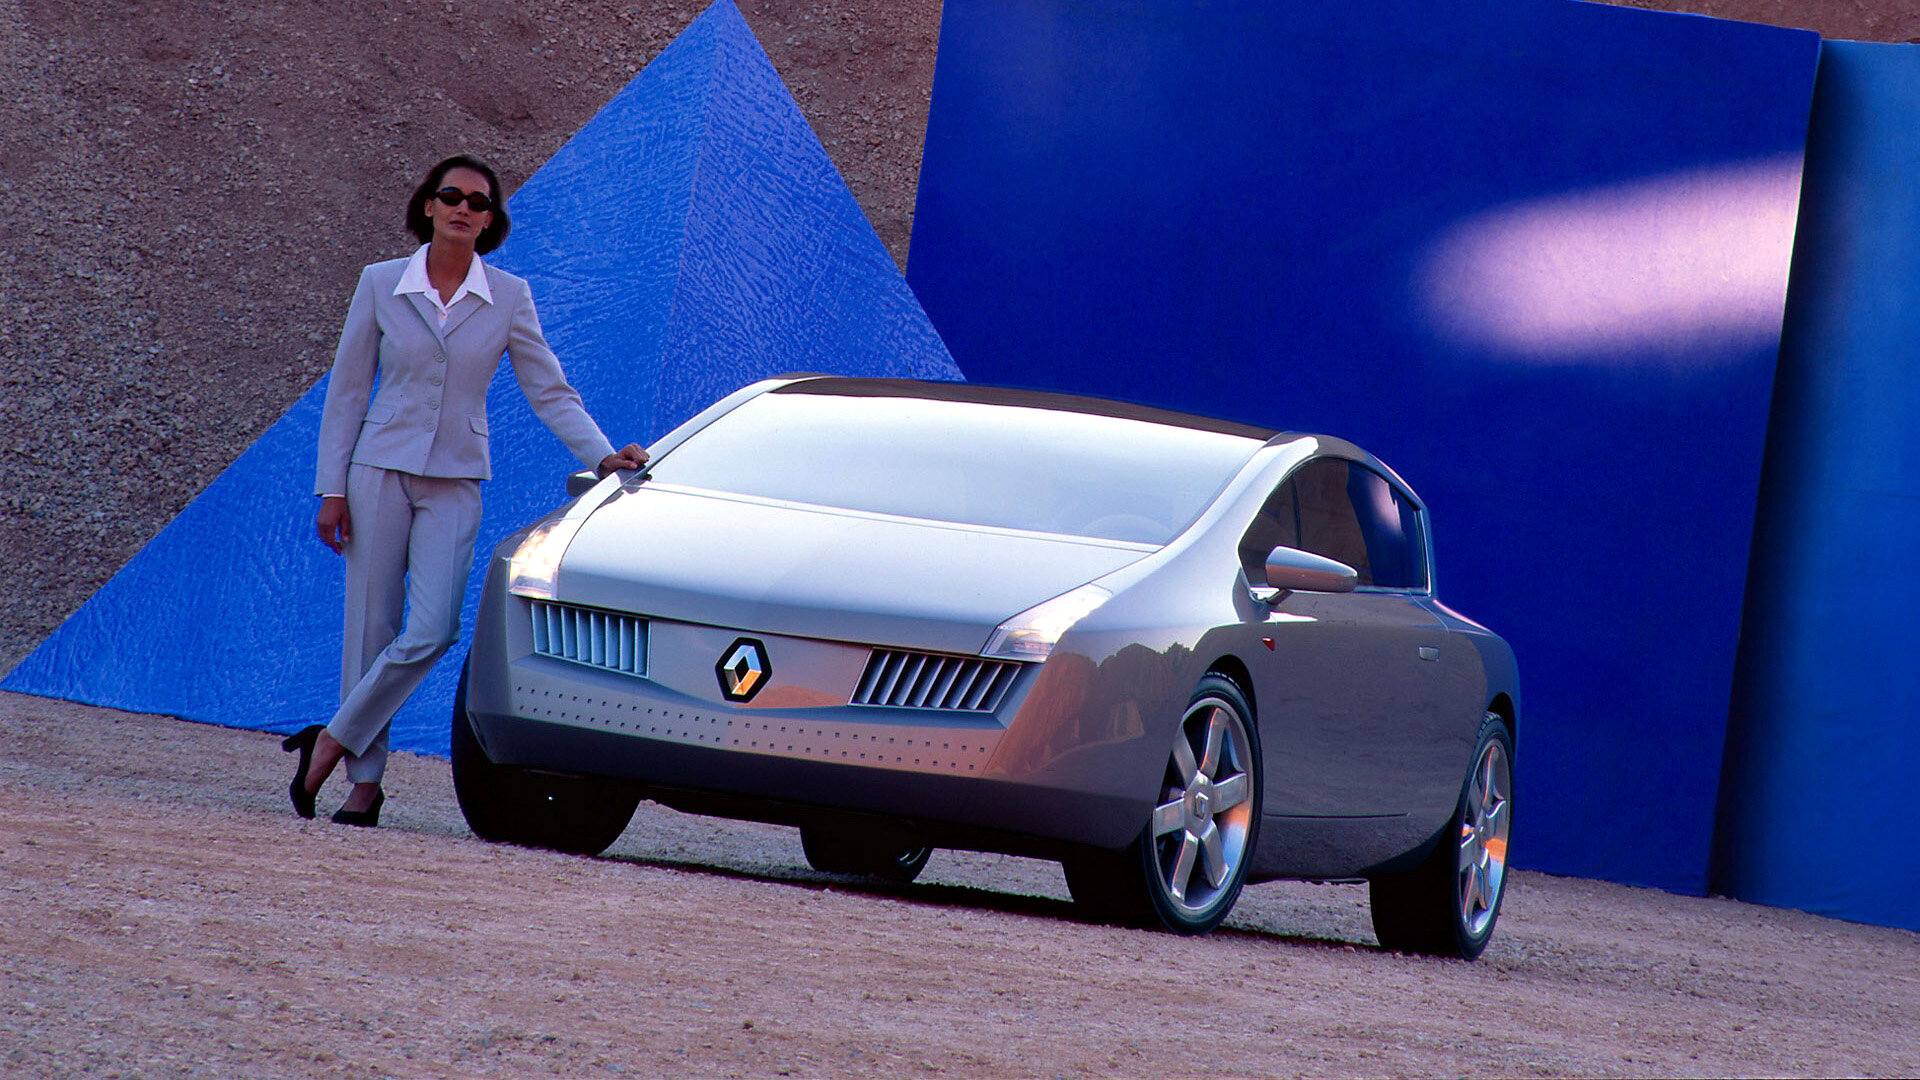 Coche del día: Renault Vel Satis Concept